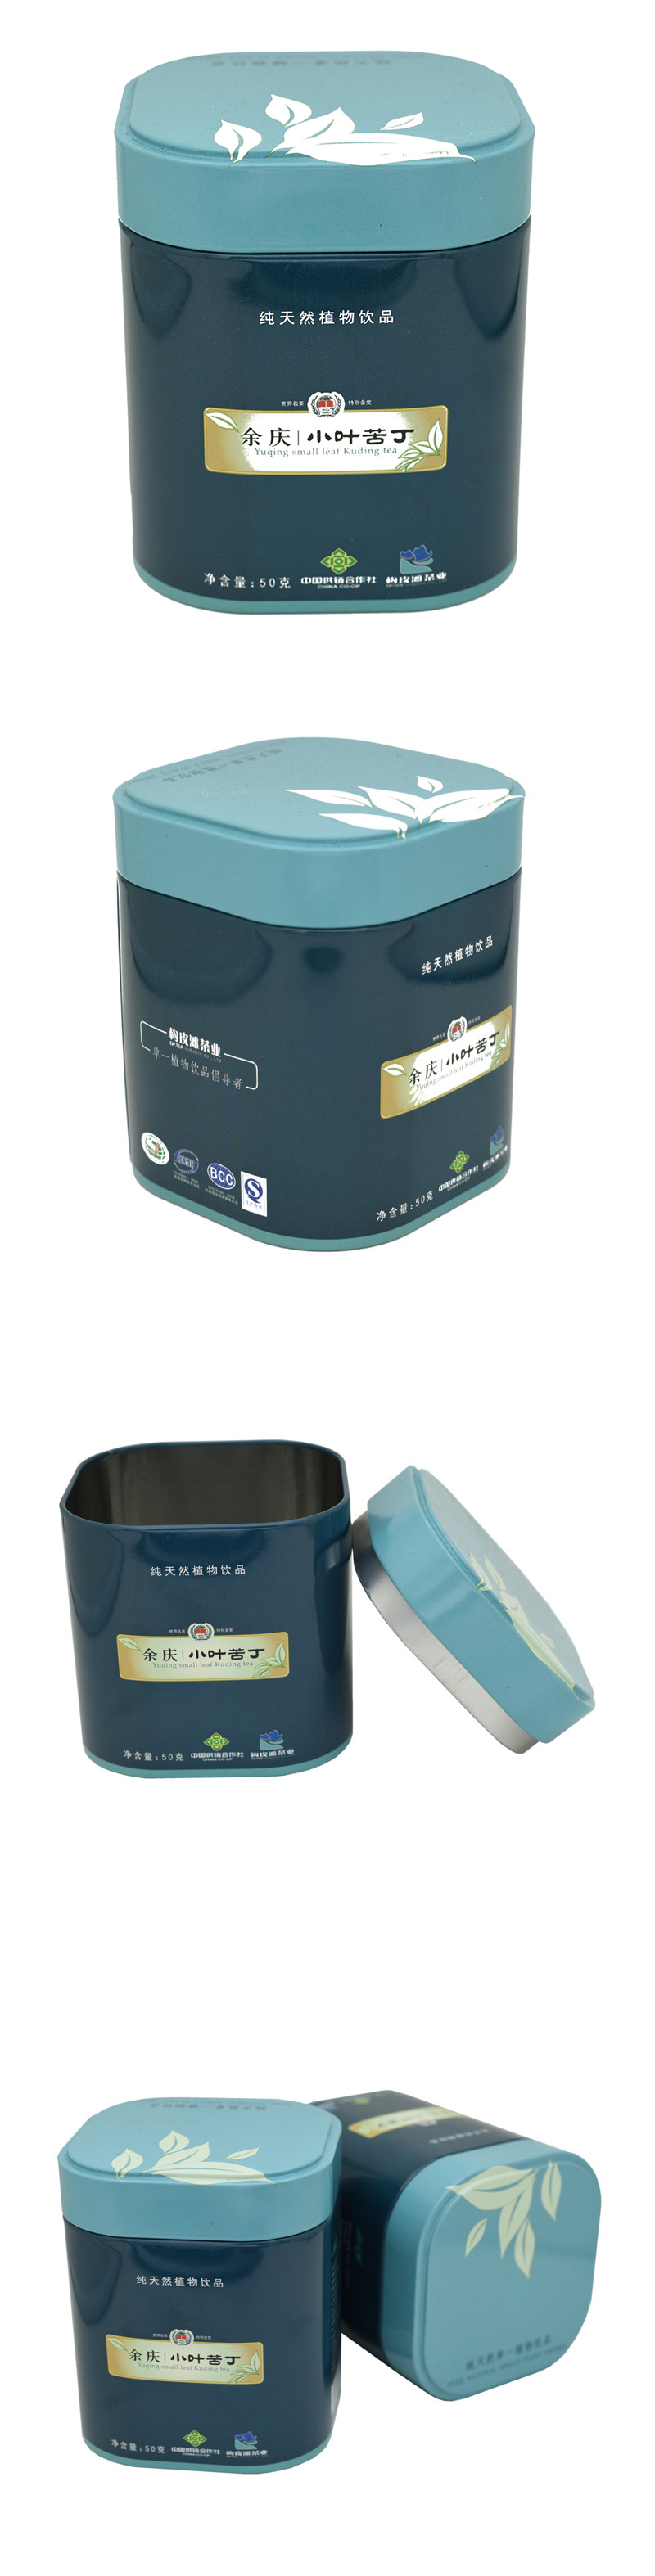 茶葉罐鐵盒設計